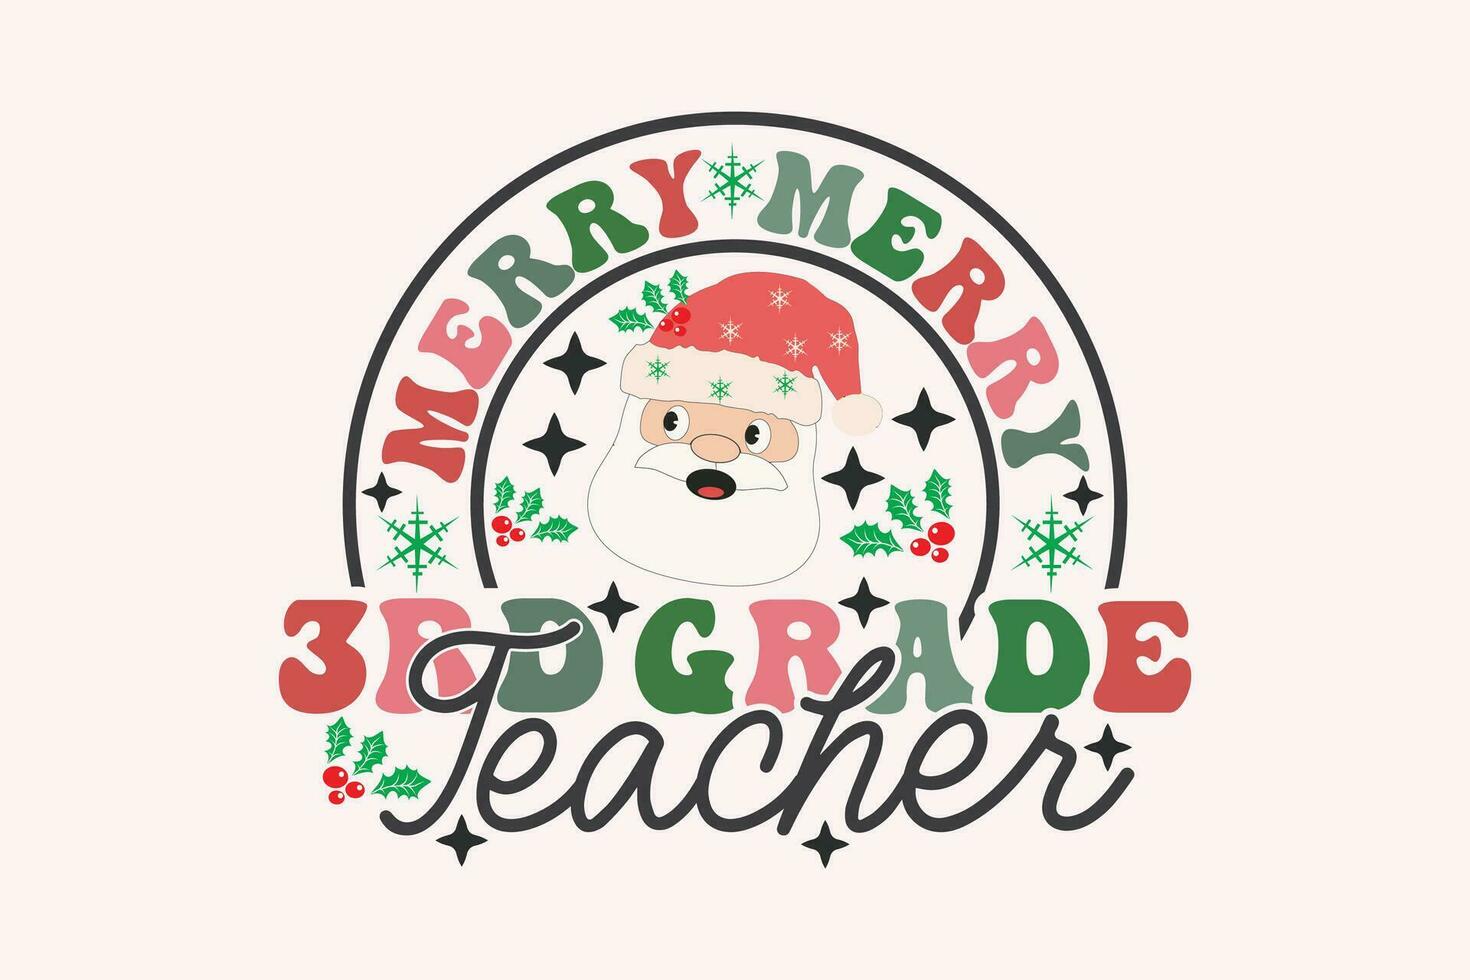 alegre 3ro grado profesor Navidad retro tipografía camiseta diseño vector